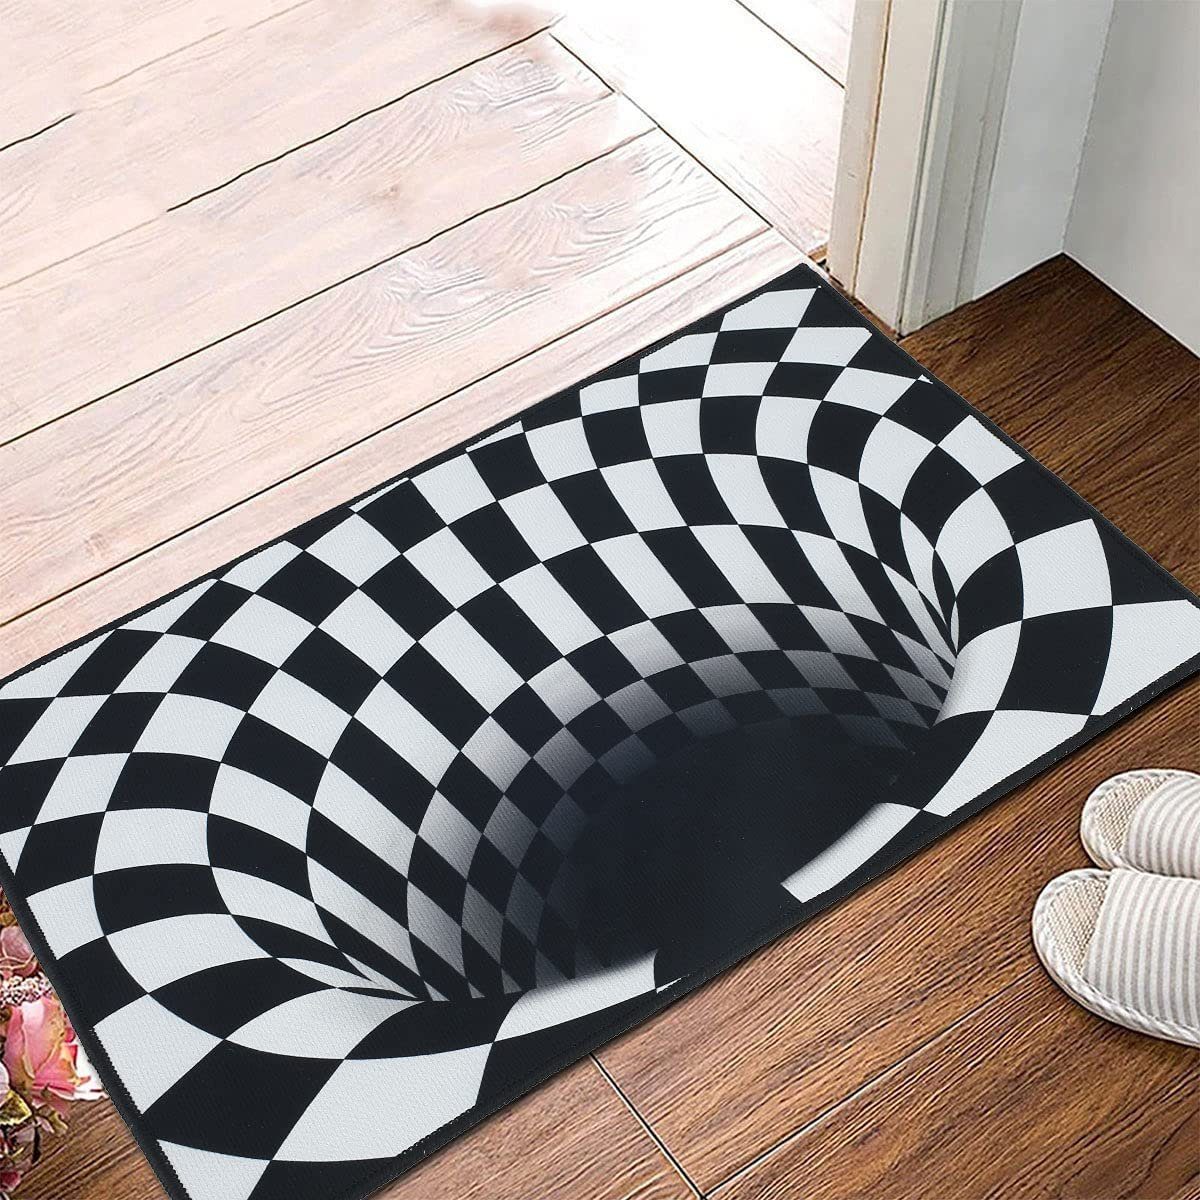 Fußmatte 3D Illusion Fußmatte Türmatte Schmutzfangmatte Teppich optische  Täuschung Bodenmatte Außen Innen waschbar rutschfest 60x40cm, MAVURA